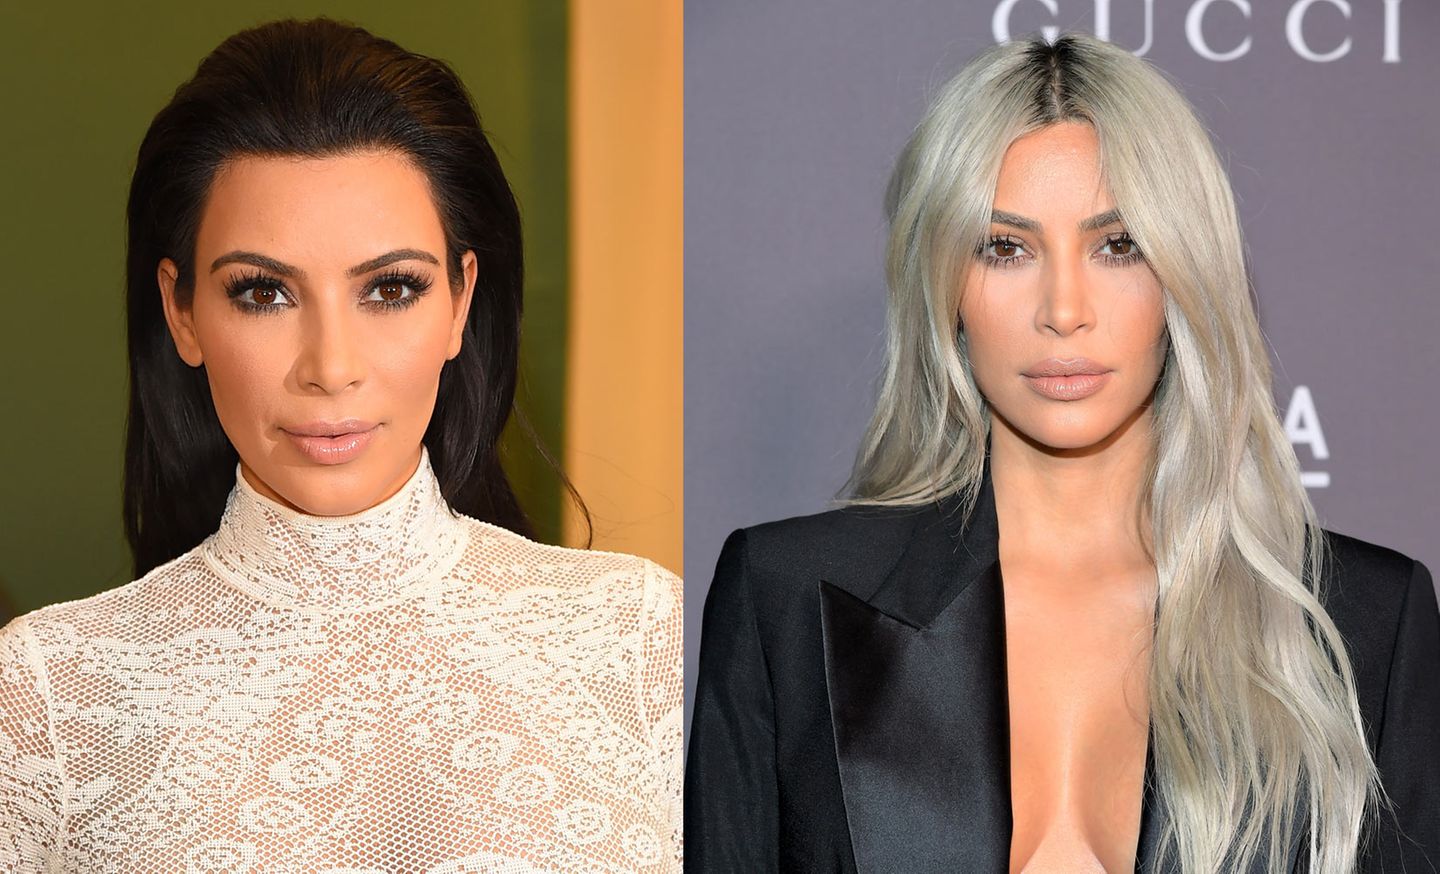 Wer an Kim Kardashian West denkt, hat automatisch ihren typischen Contouring-Look inklusive schwarzer XL-Mähne vor Augen. Dabei ist diese gar nicht mehr aktuell. Lang sind ihre Haare zwar immer noch, farblich mittlerweile aber eine Mischung aus Grau und Platinblond.